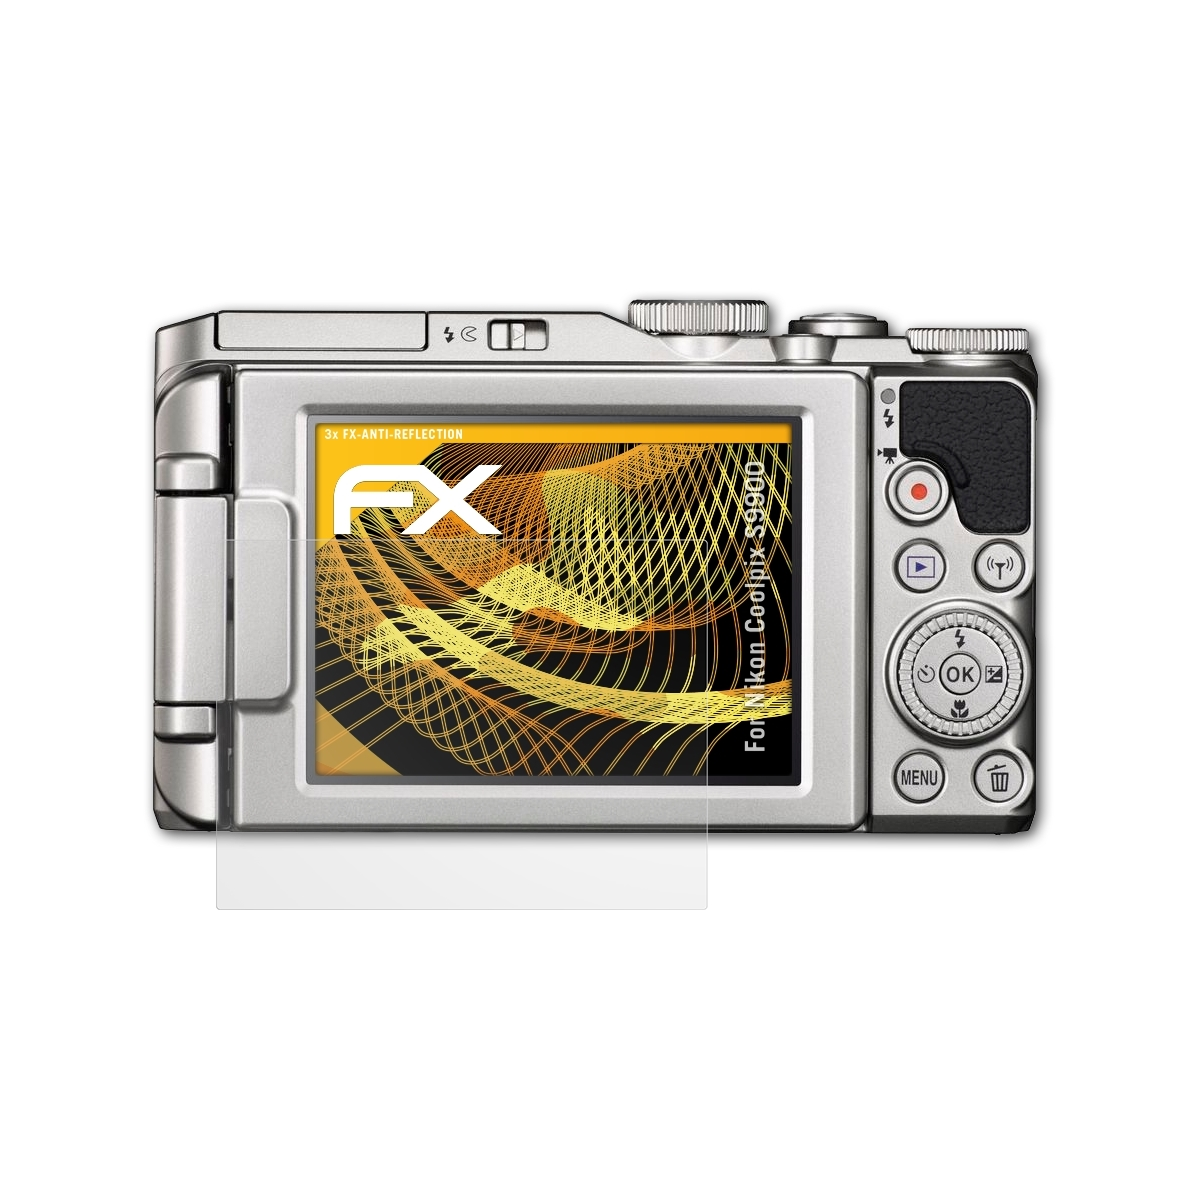 ATFOLIX 3x FX-Antireflex Displayschutz(für Nikon Coolpix S9900)